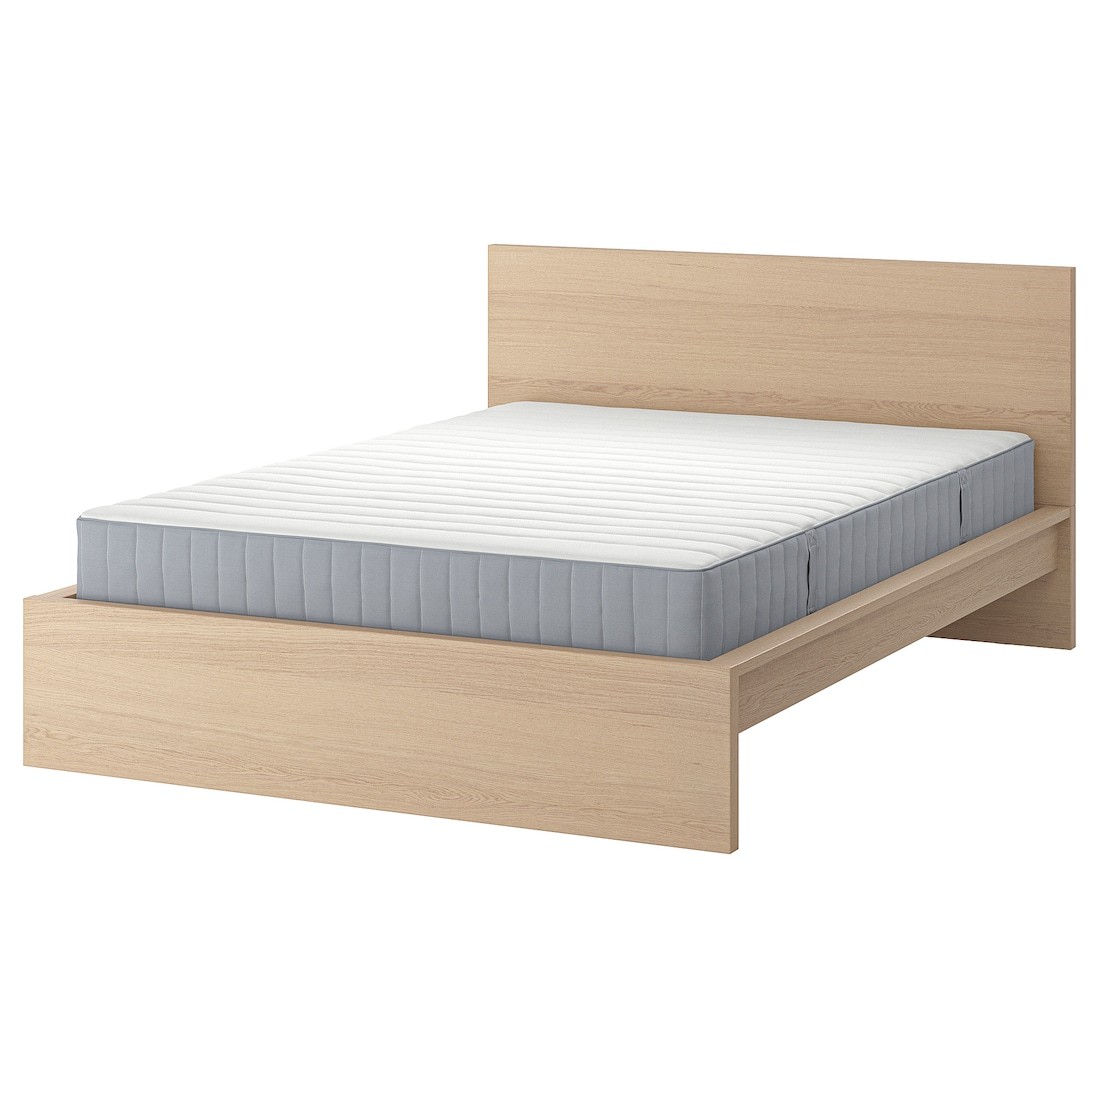 MALM Кровать с матрасом, дубовый шпон беленый / Valevåg средней жесткости, 180x200 см